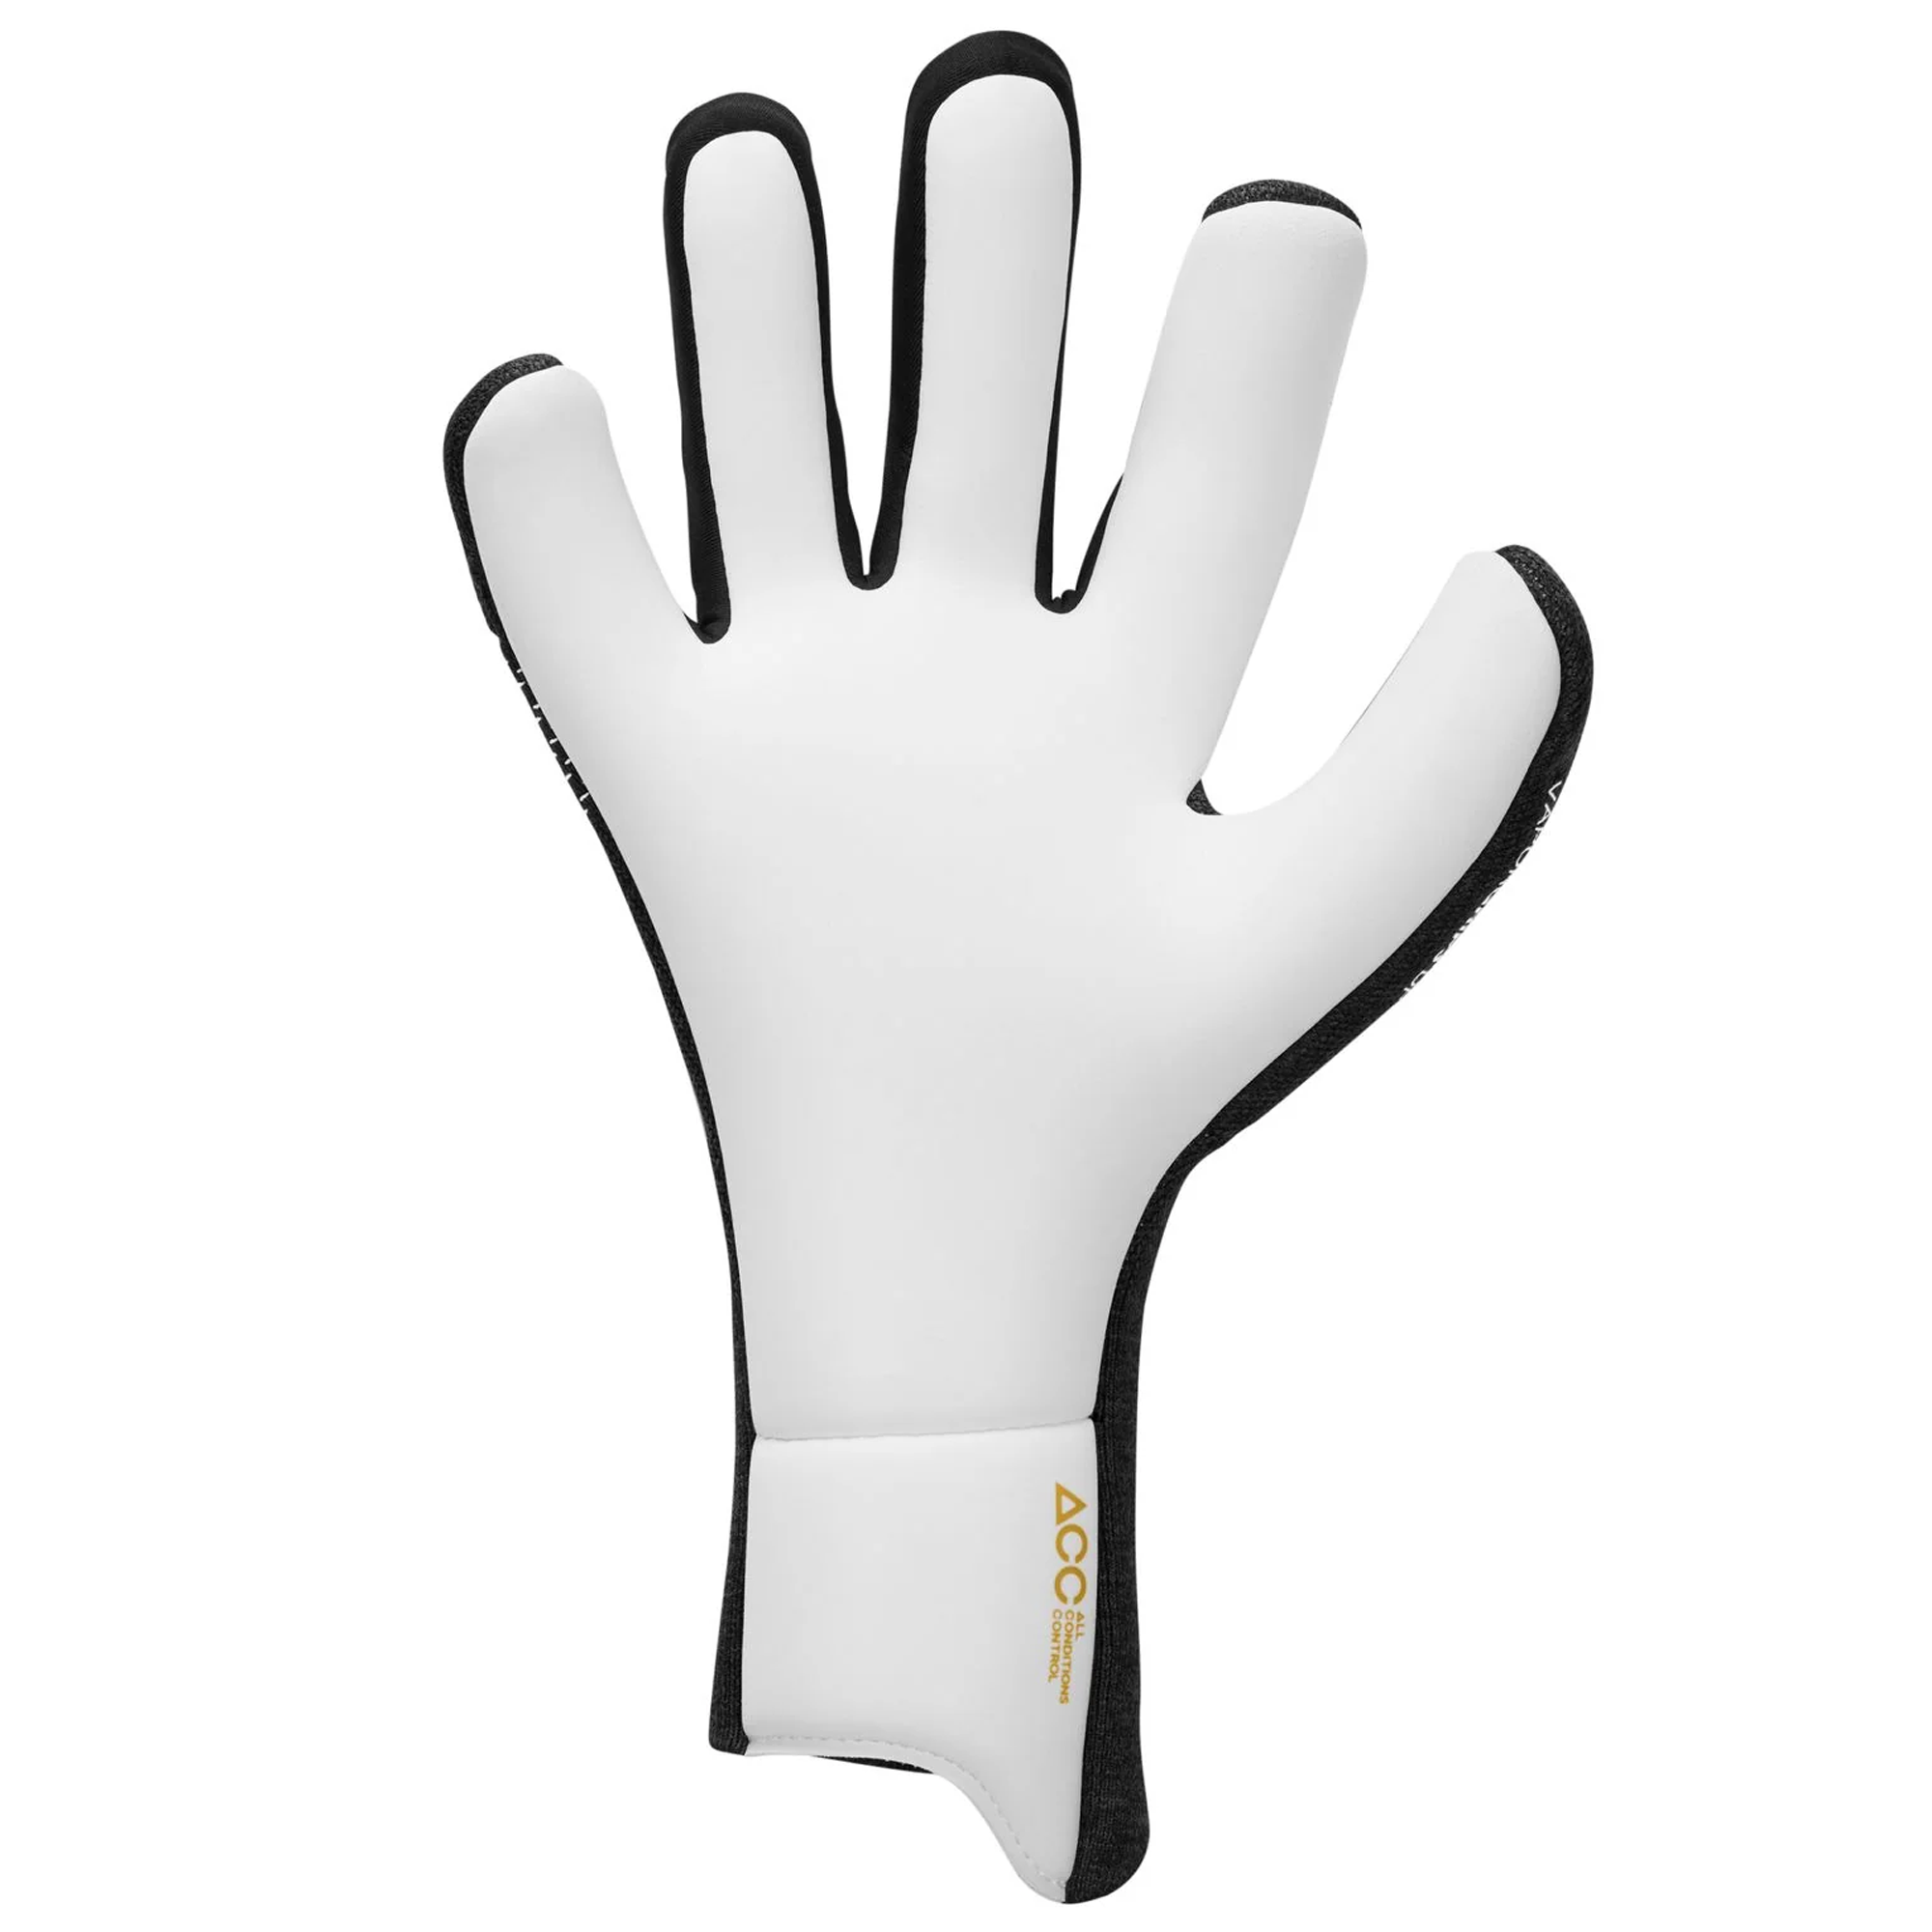 Nike Vapor Dynamic Fit Goalkeeper Gloves